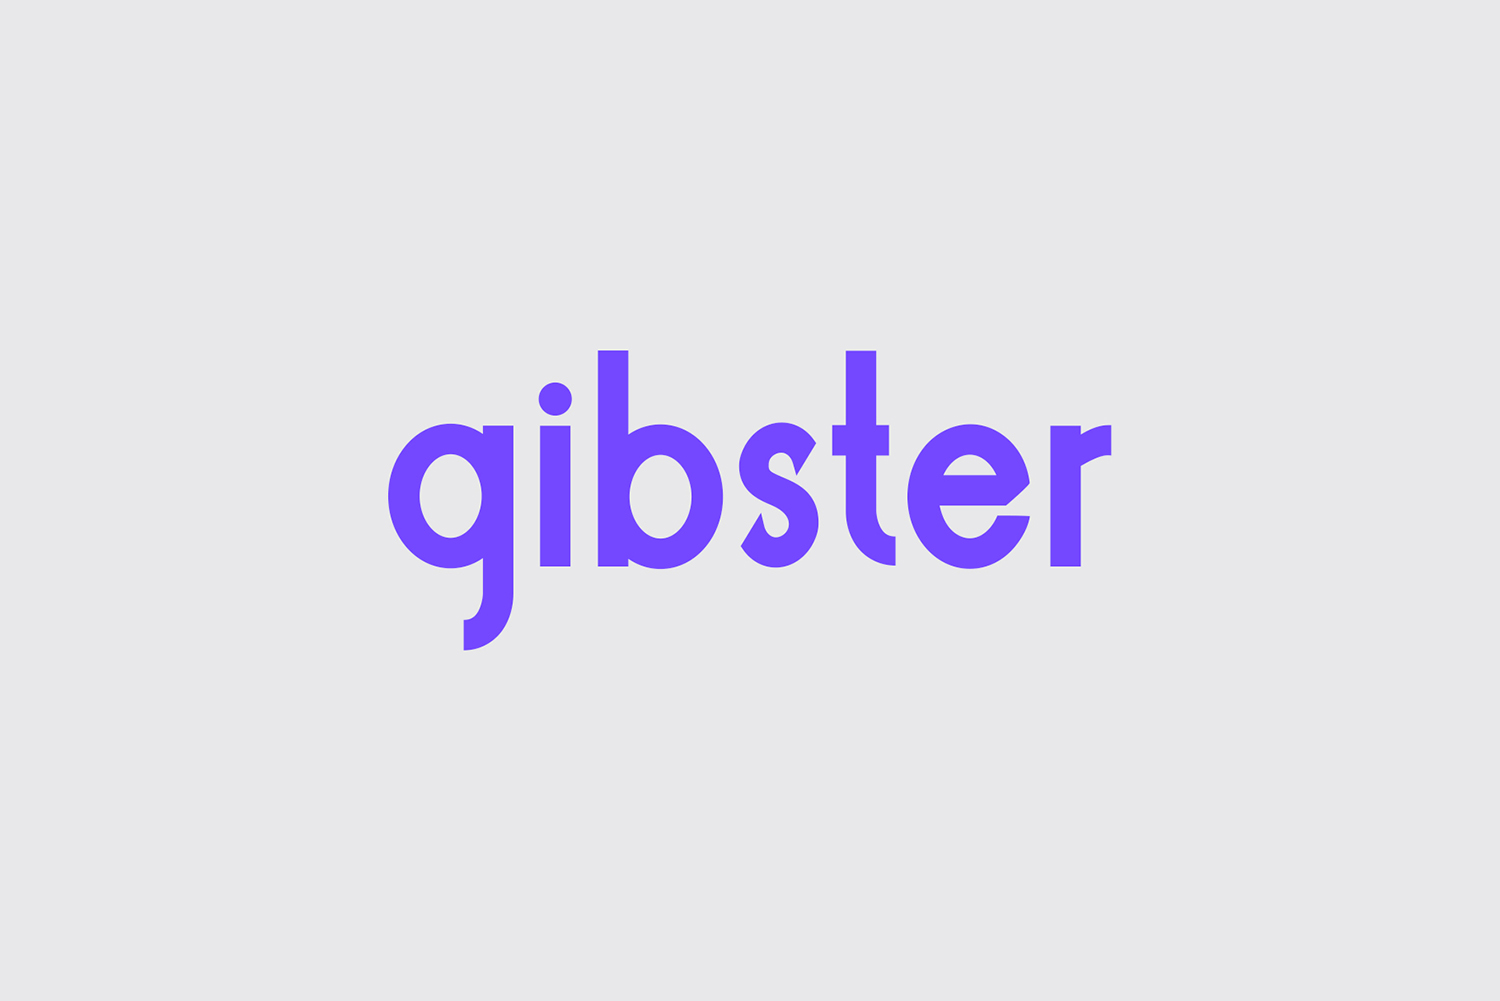 Gibster Sans Free Font